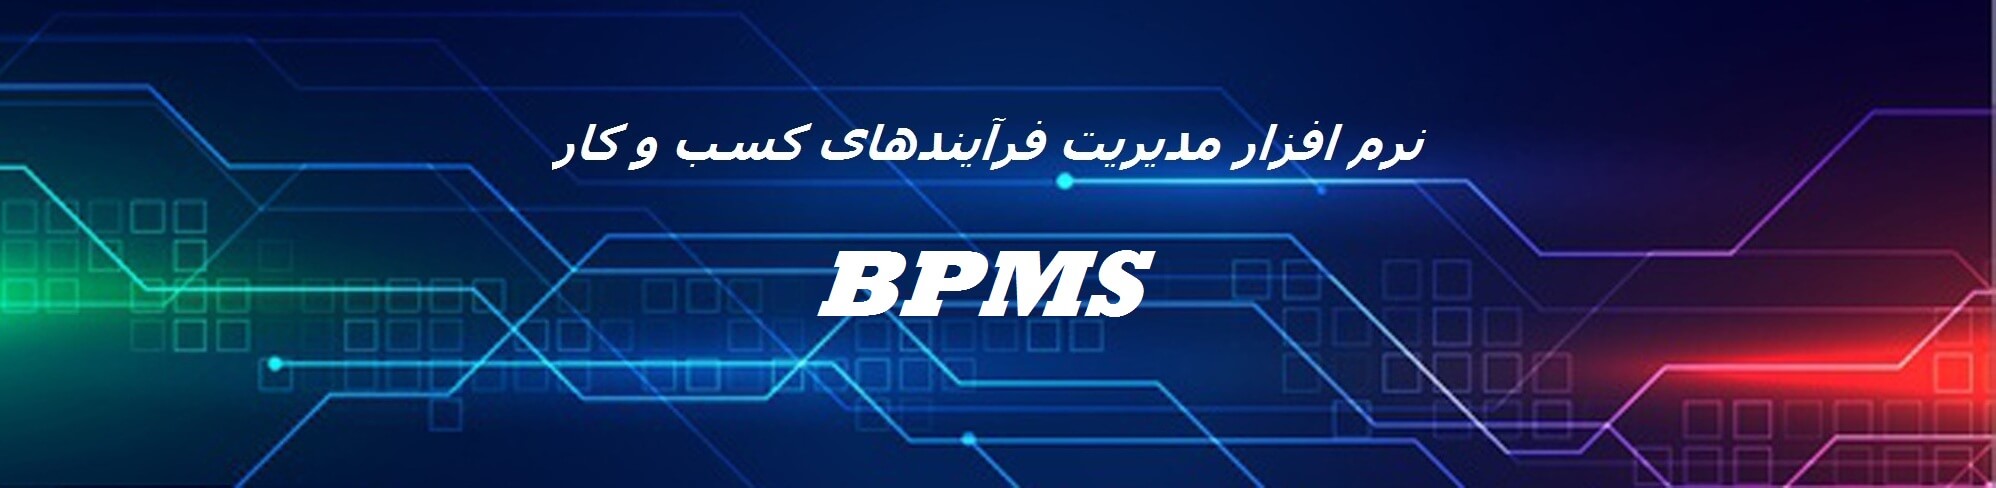  نرم افزار مدیریت فرآیندهای کسب و کار (BPMS)